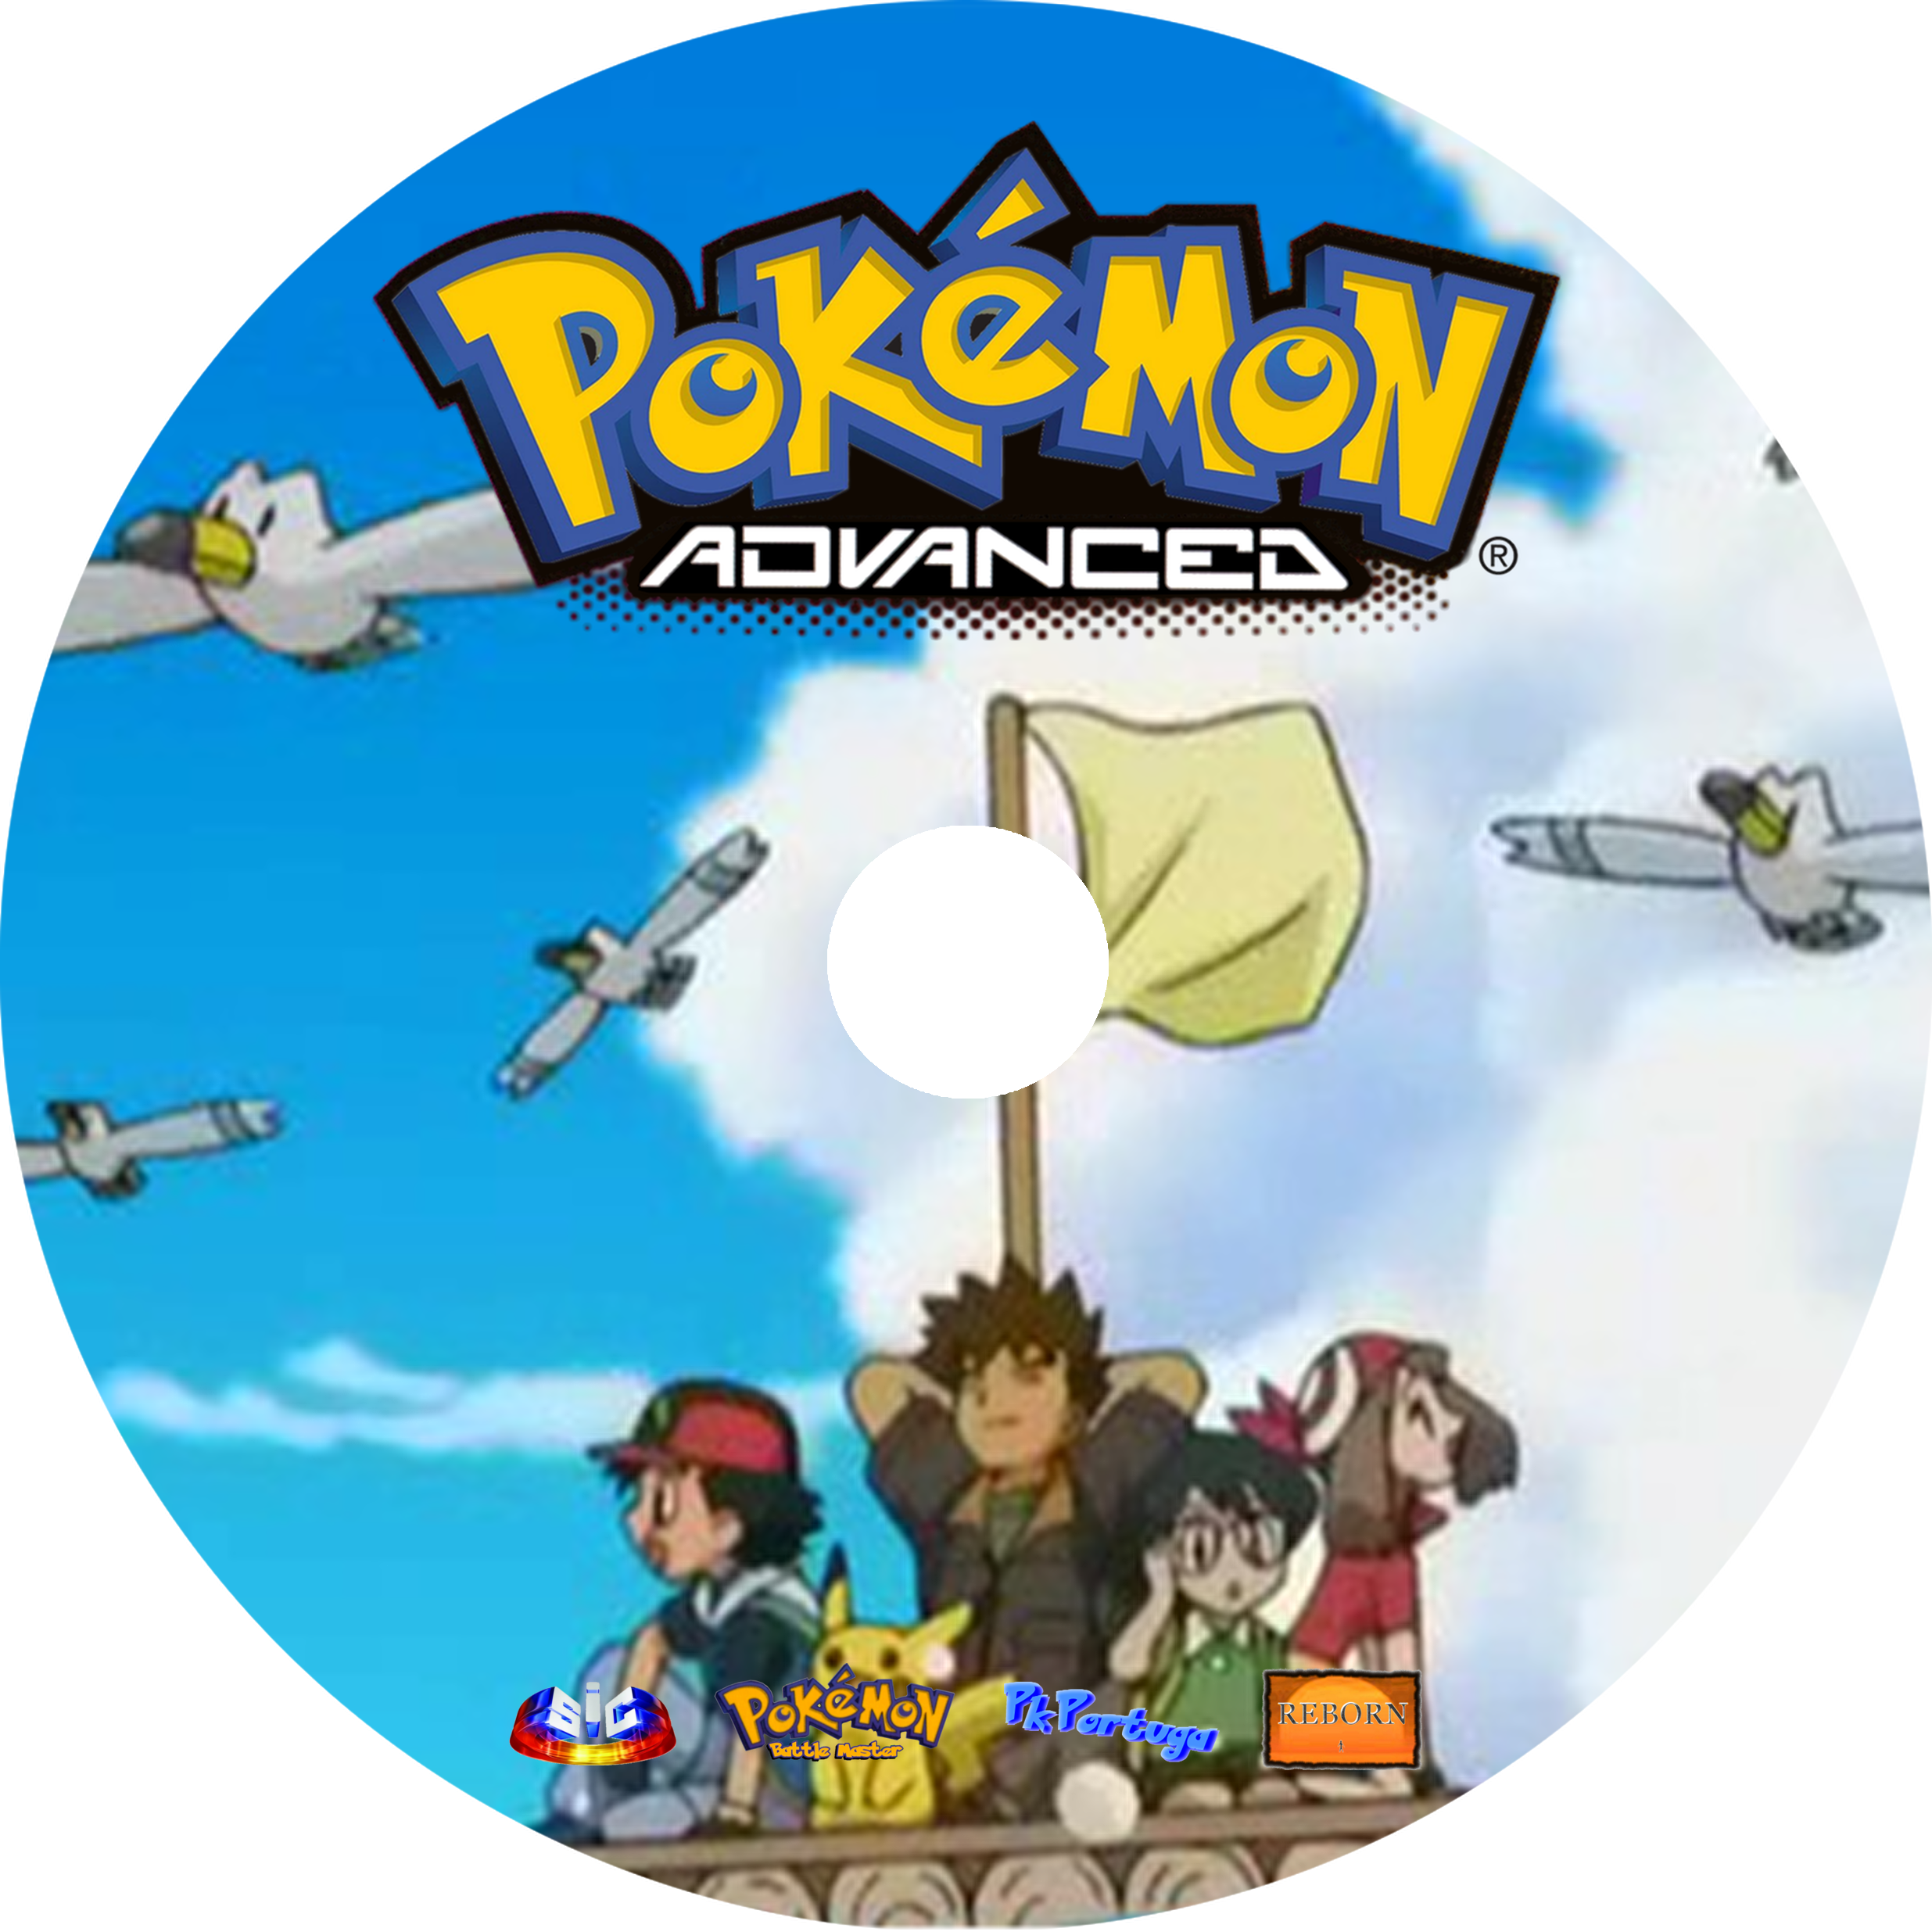 Dvd Pokémon 7 Alma Gêmea ( Filme Original Hoenn Dublado com Deoxys